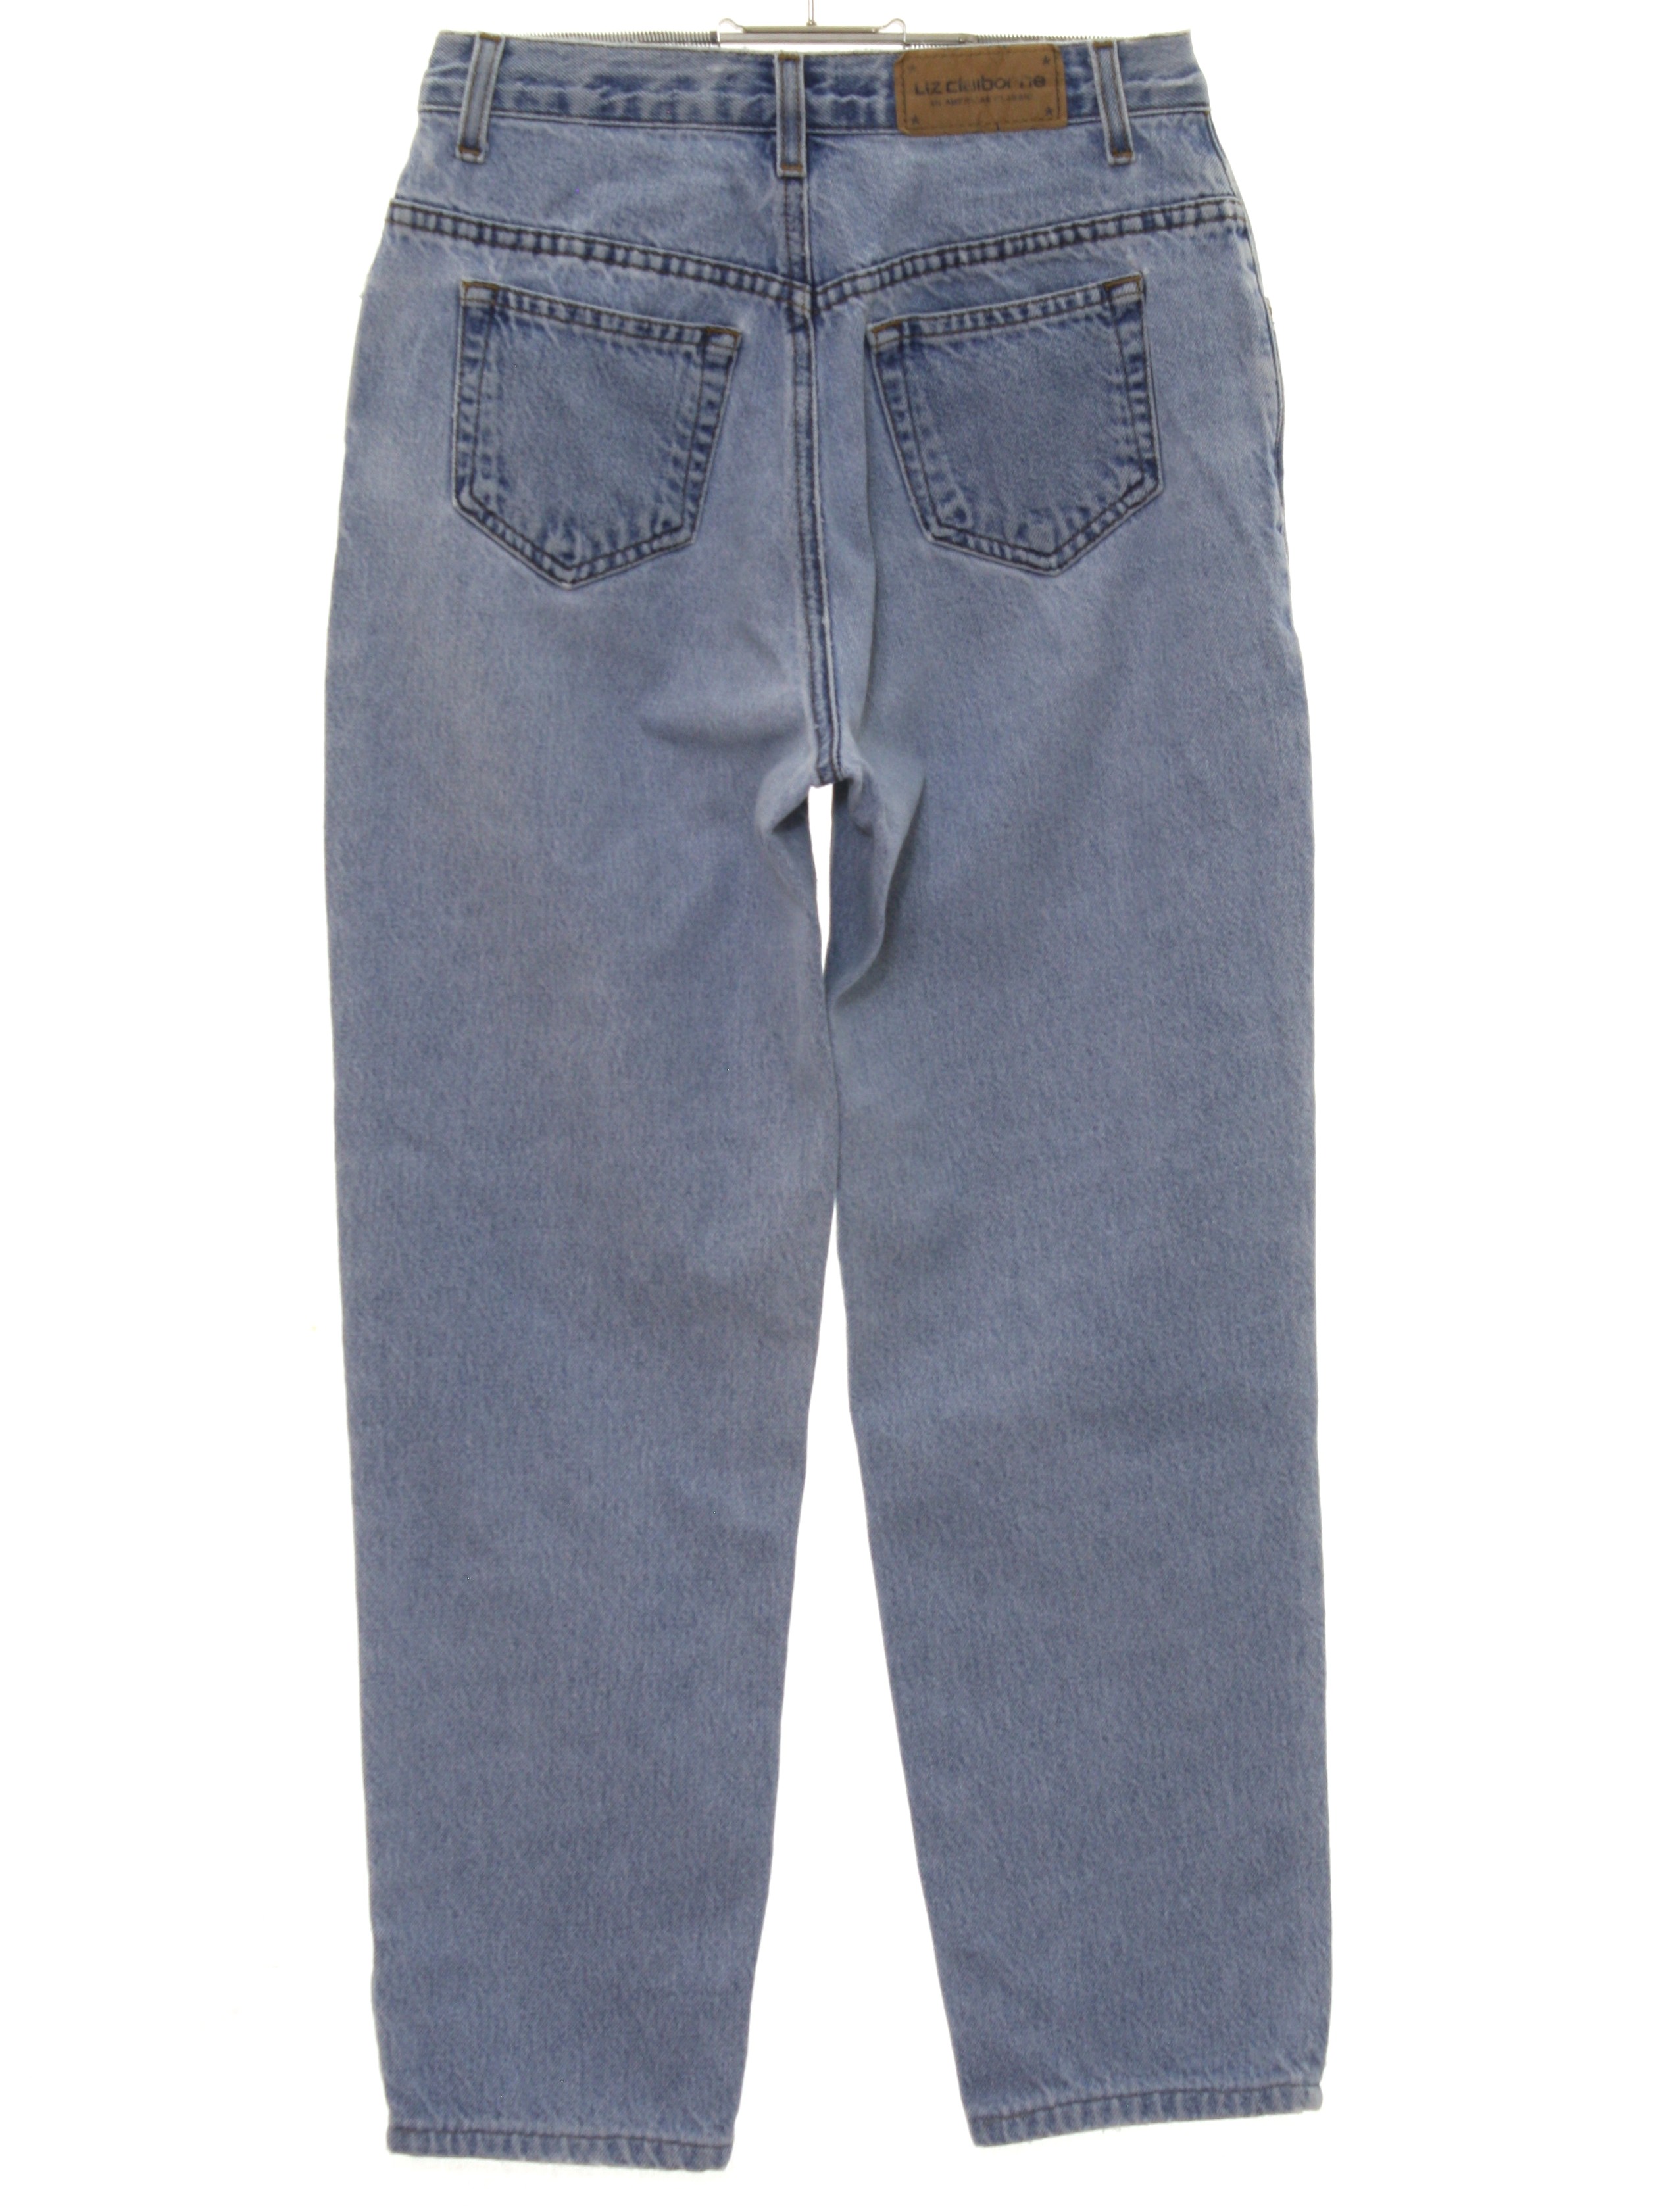 Lizwear Jeans 1990s Vintage Pants: 90s -Lizwear Jeans- Womens stone ...